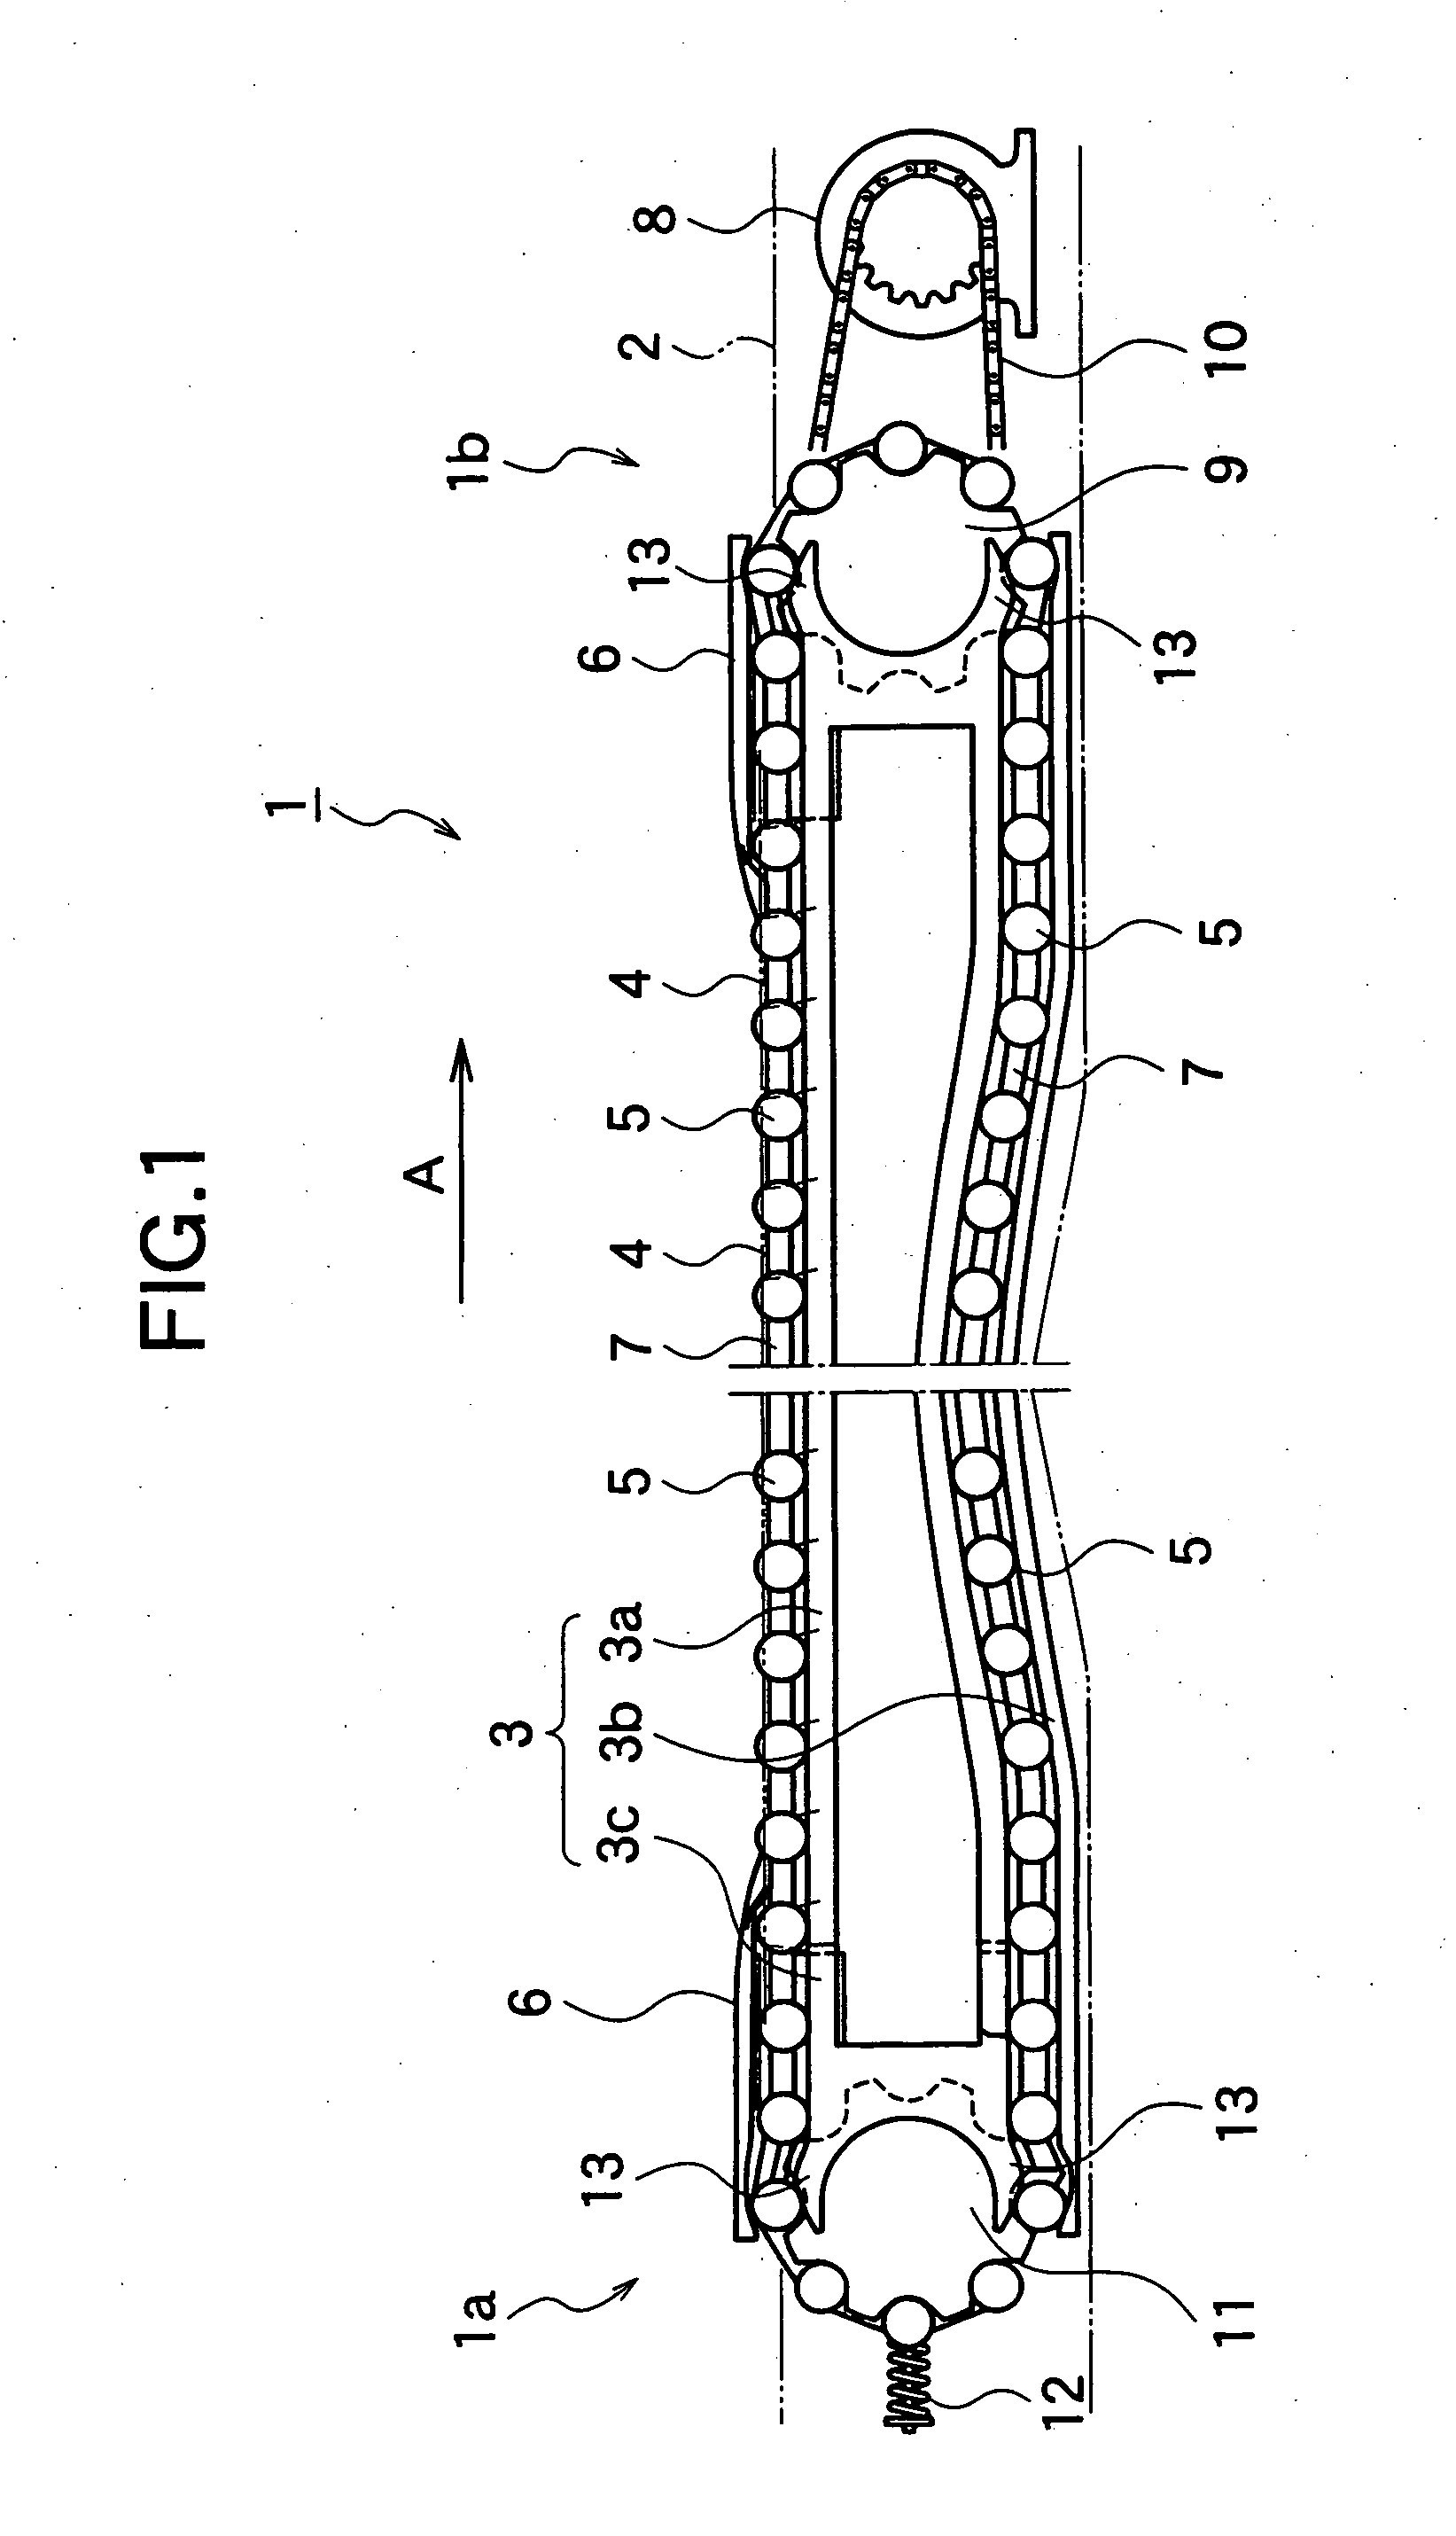 Conveyer apparatus